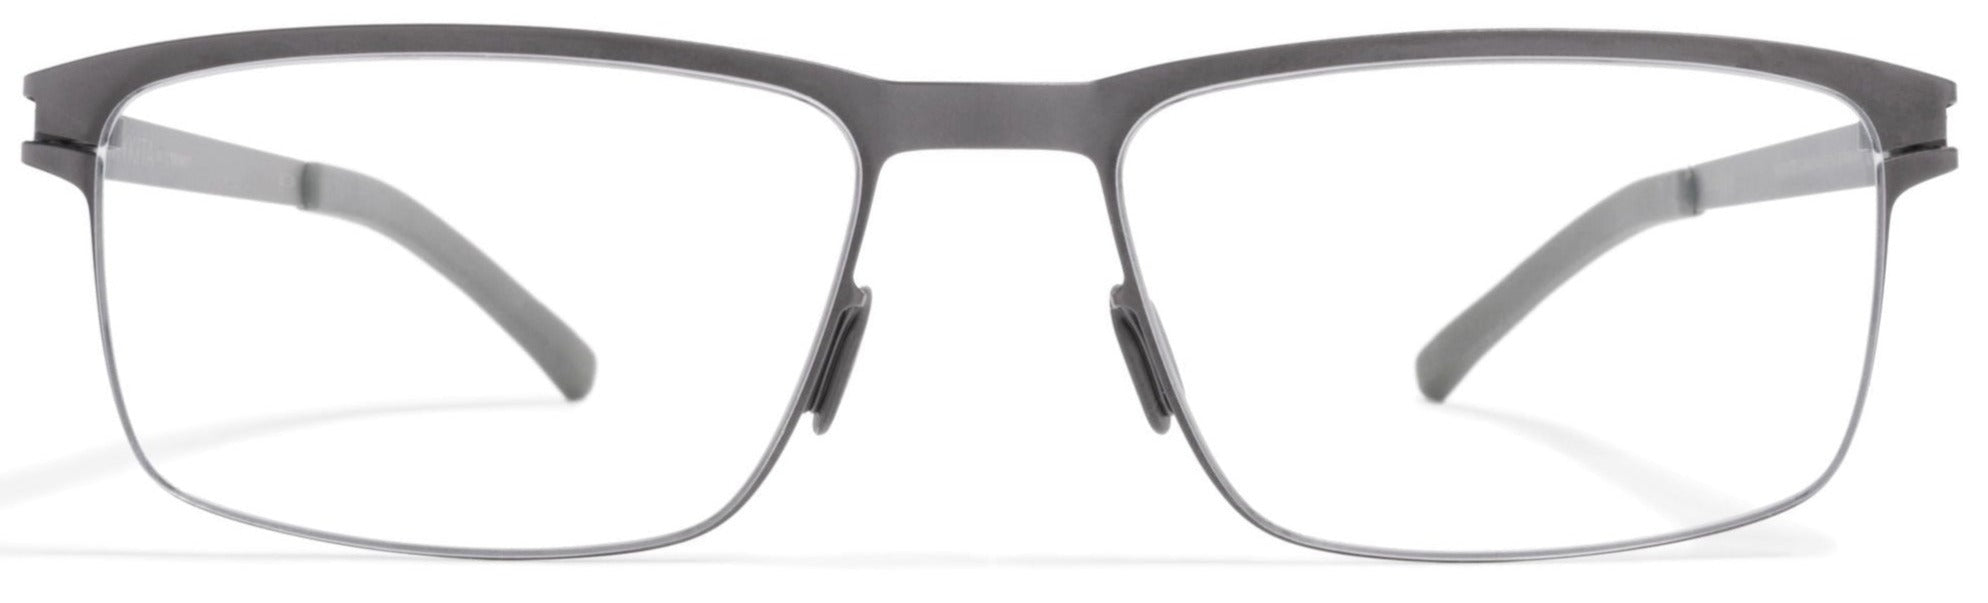 Alexander Daas - Mykita Dennis Eyeglasses - Graphite - Front View